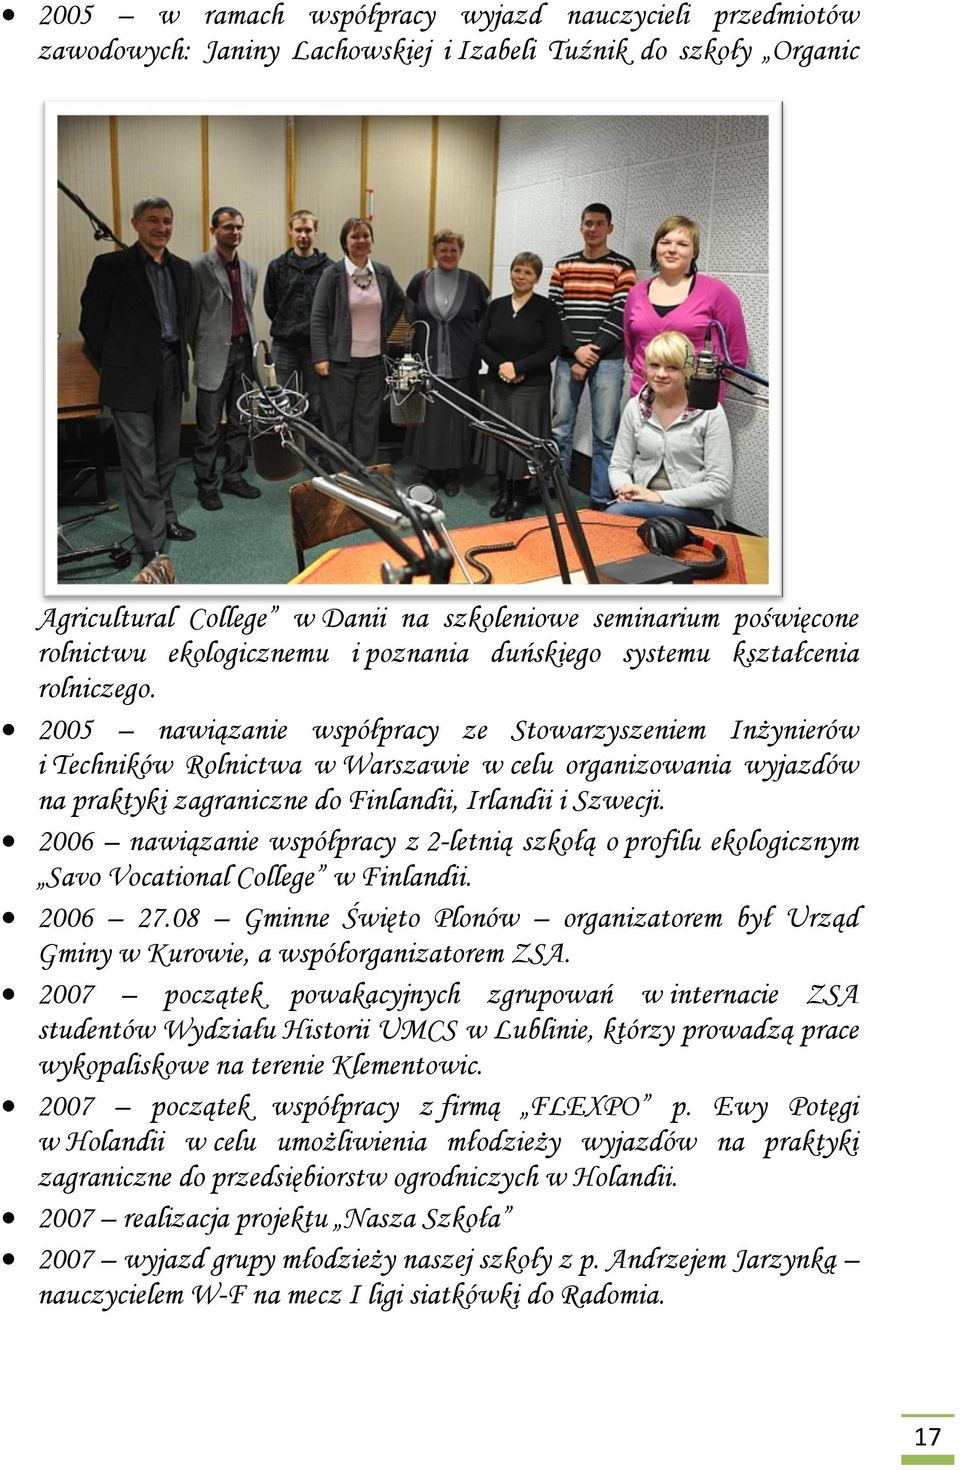 2005 nawiązanie współpracy ze Stowarzyszeniem Inżynierów i Techników Rolnictwa w Warszawie w celu organizowania wyjazdów na praktyki zagraniczne do Finlandii, Irlandii i Szwecji.